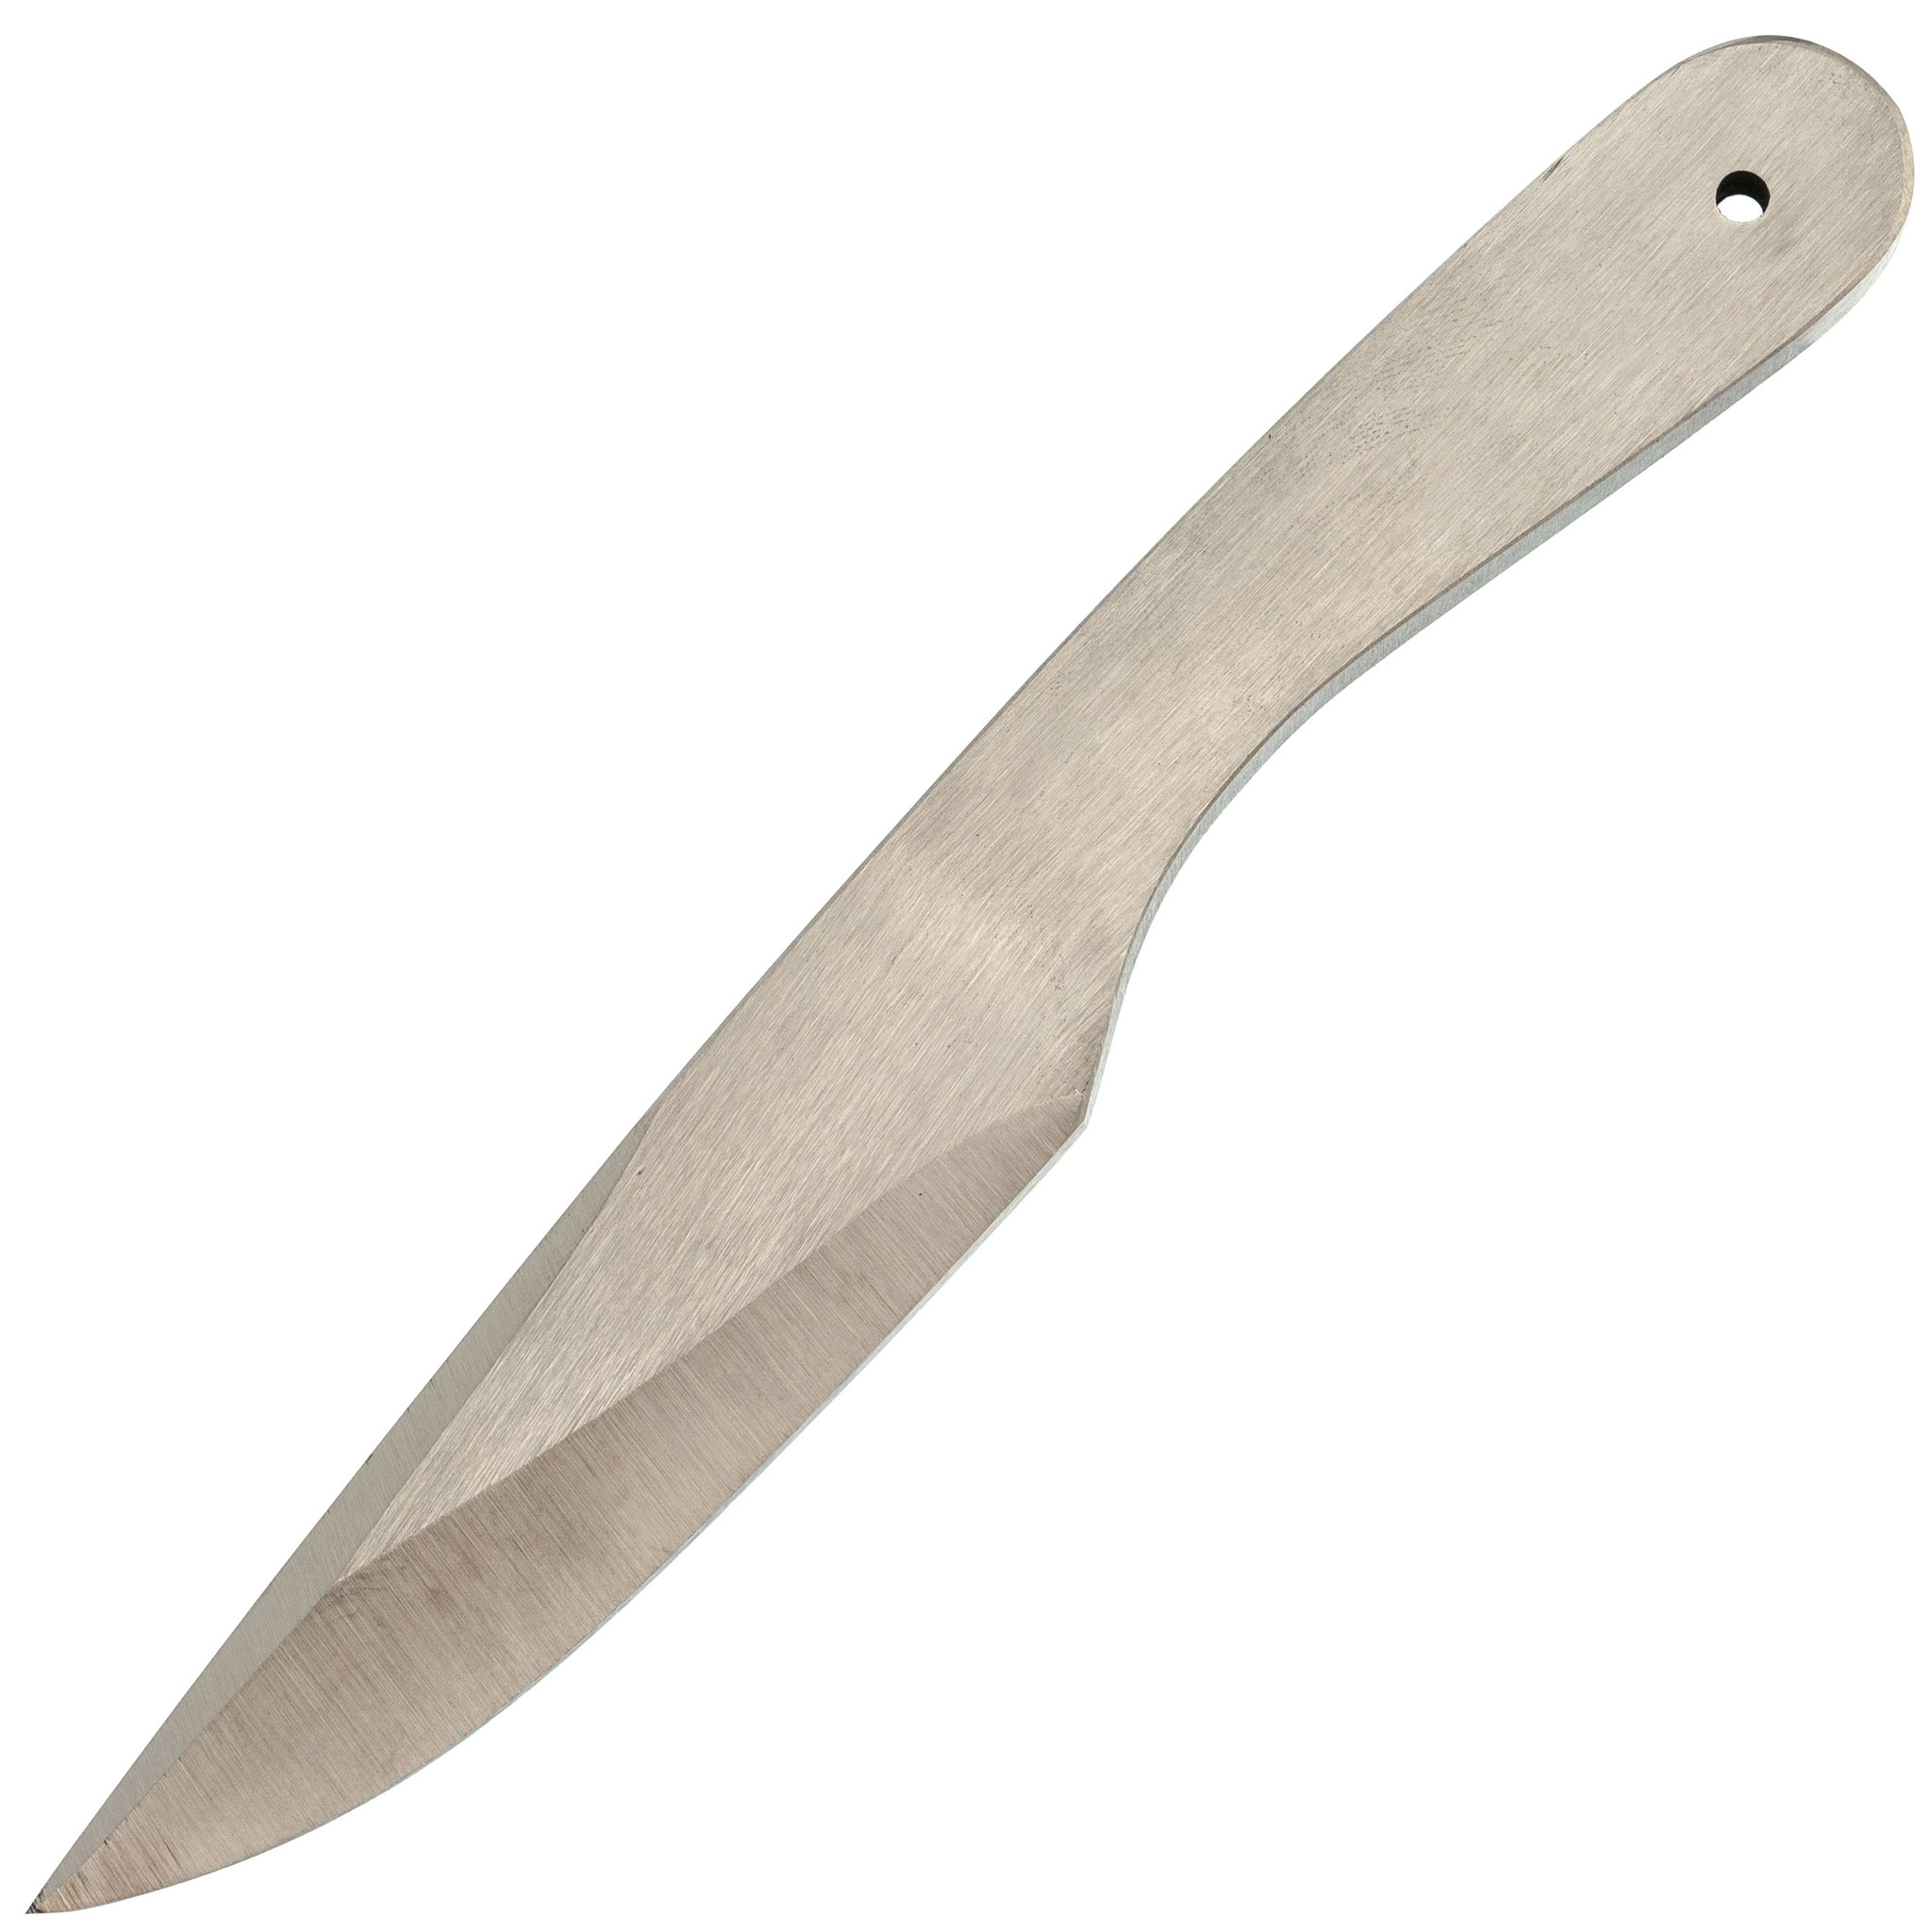 

Спортивный нож Осетр мини, Коваль, сталь 65Г